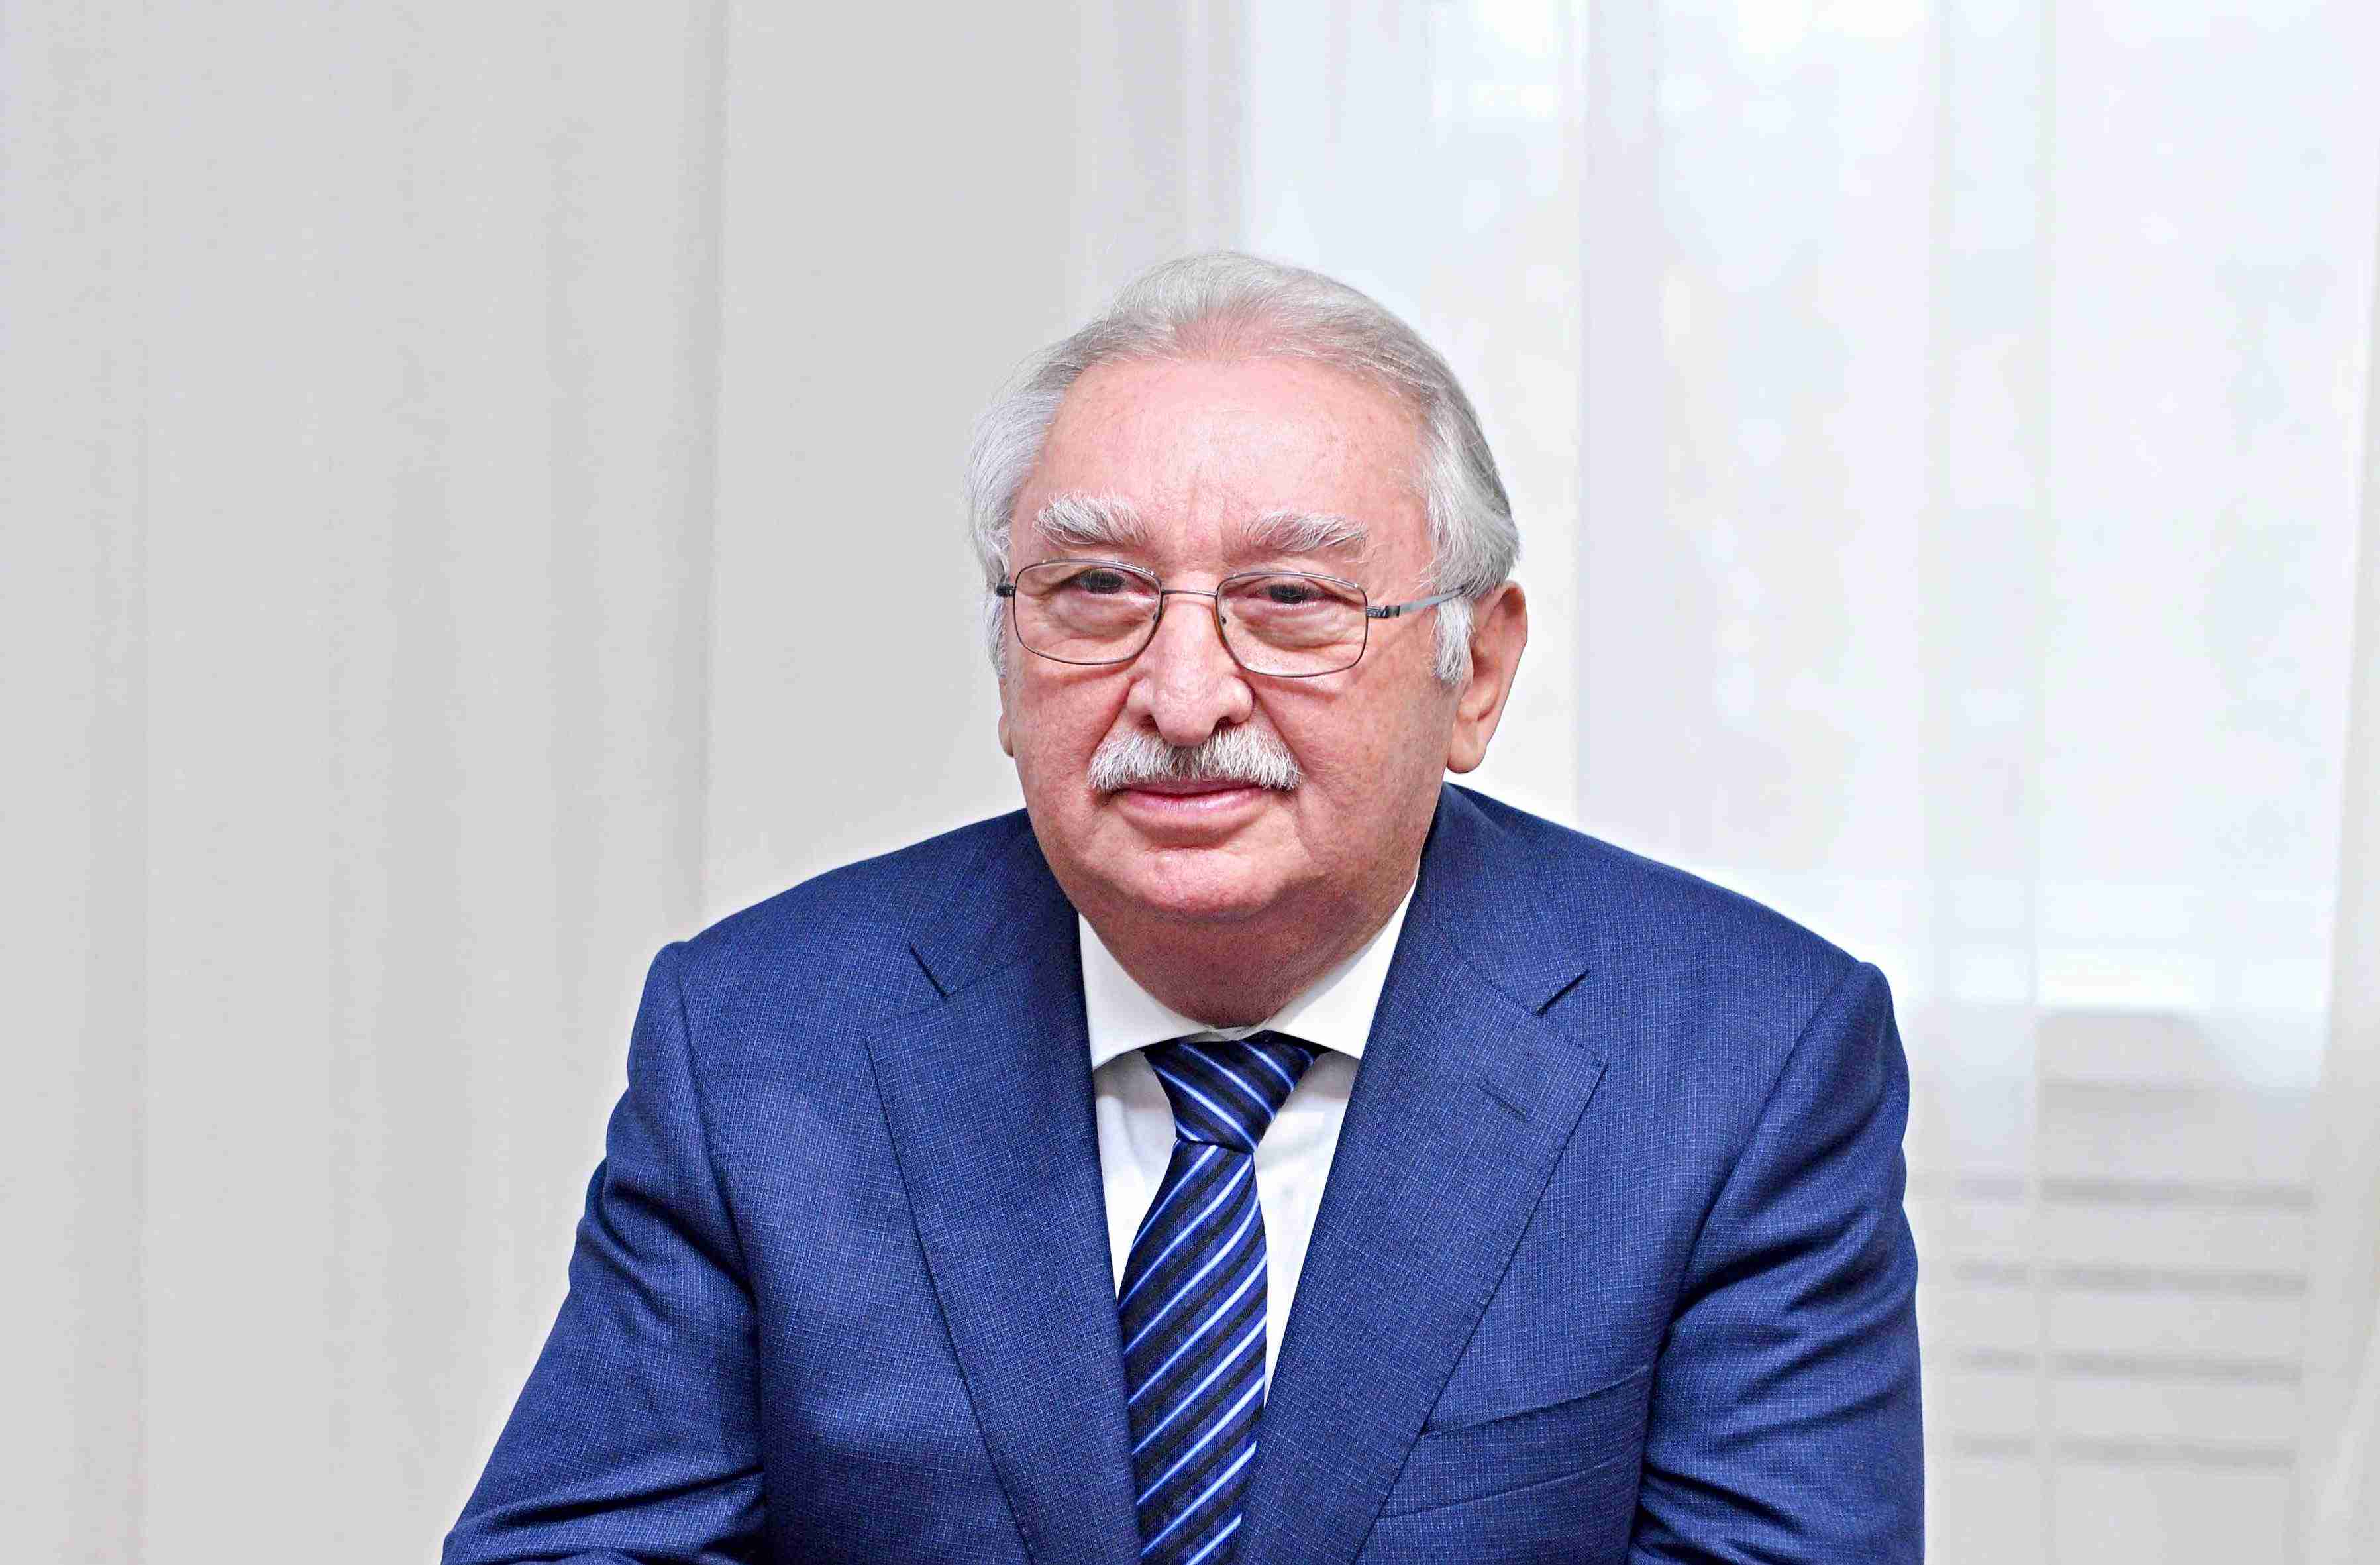 Bugün Odlar Yurdu Üniversitesi'nin kurucusu, rektörü, saygın profesörü Ahmet Valiyev'in doğum günü!